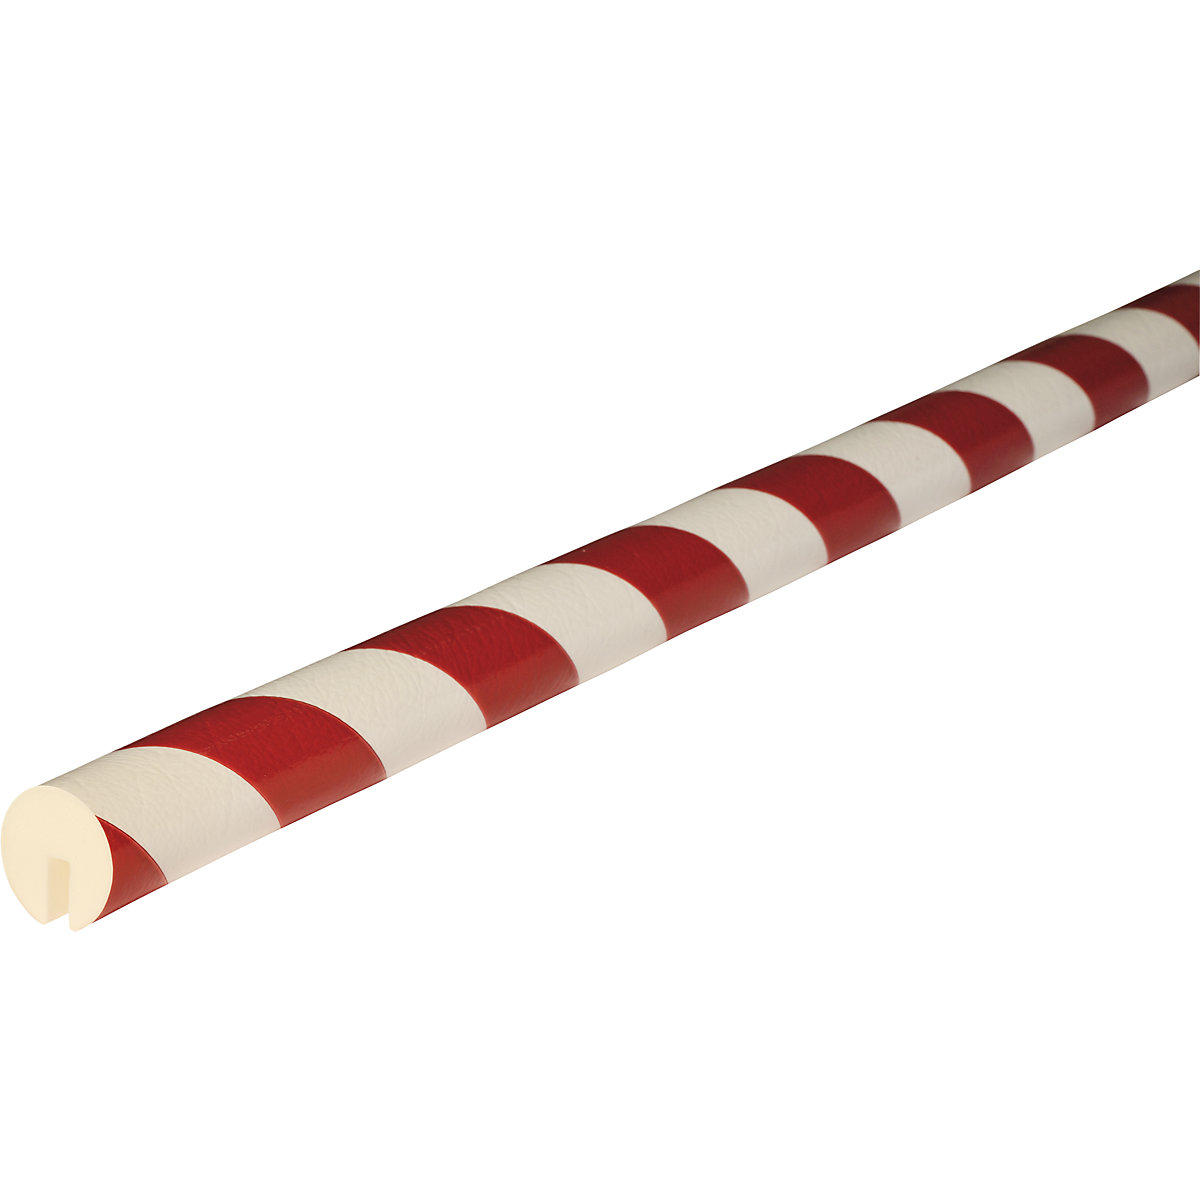 Proteção de rebordos Knuffi® – SHG, tipo B, corte individual, por metro corrente, vermelho/branco-23